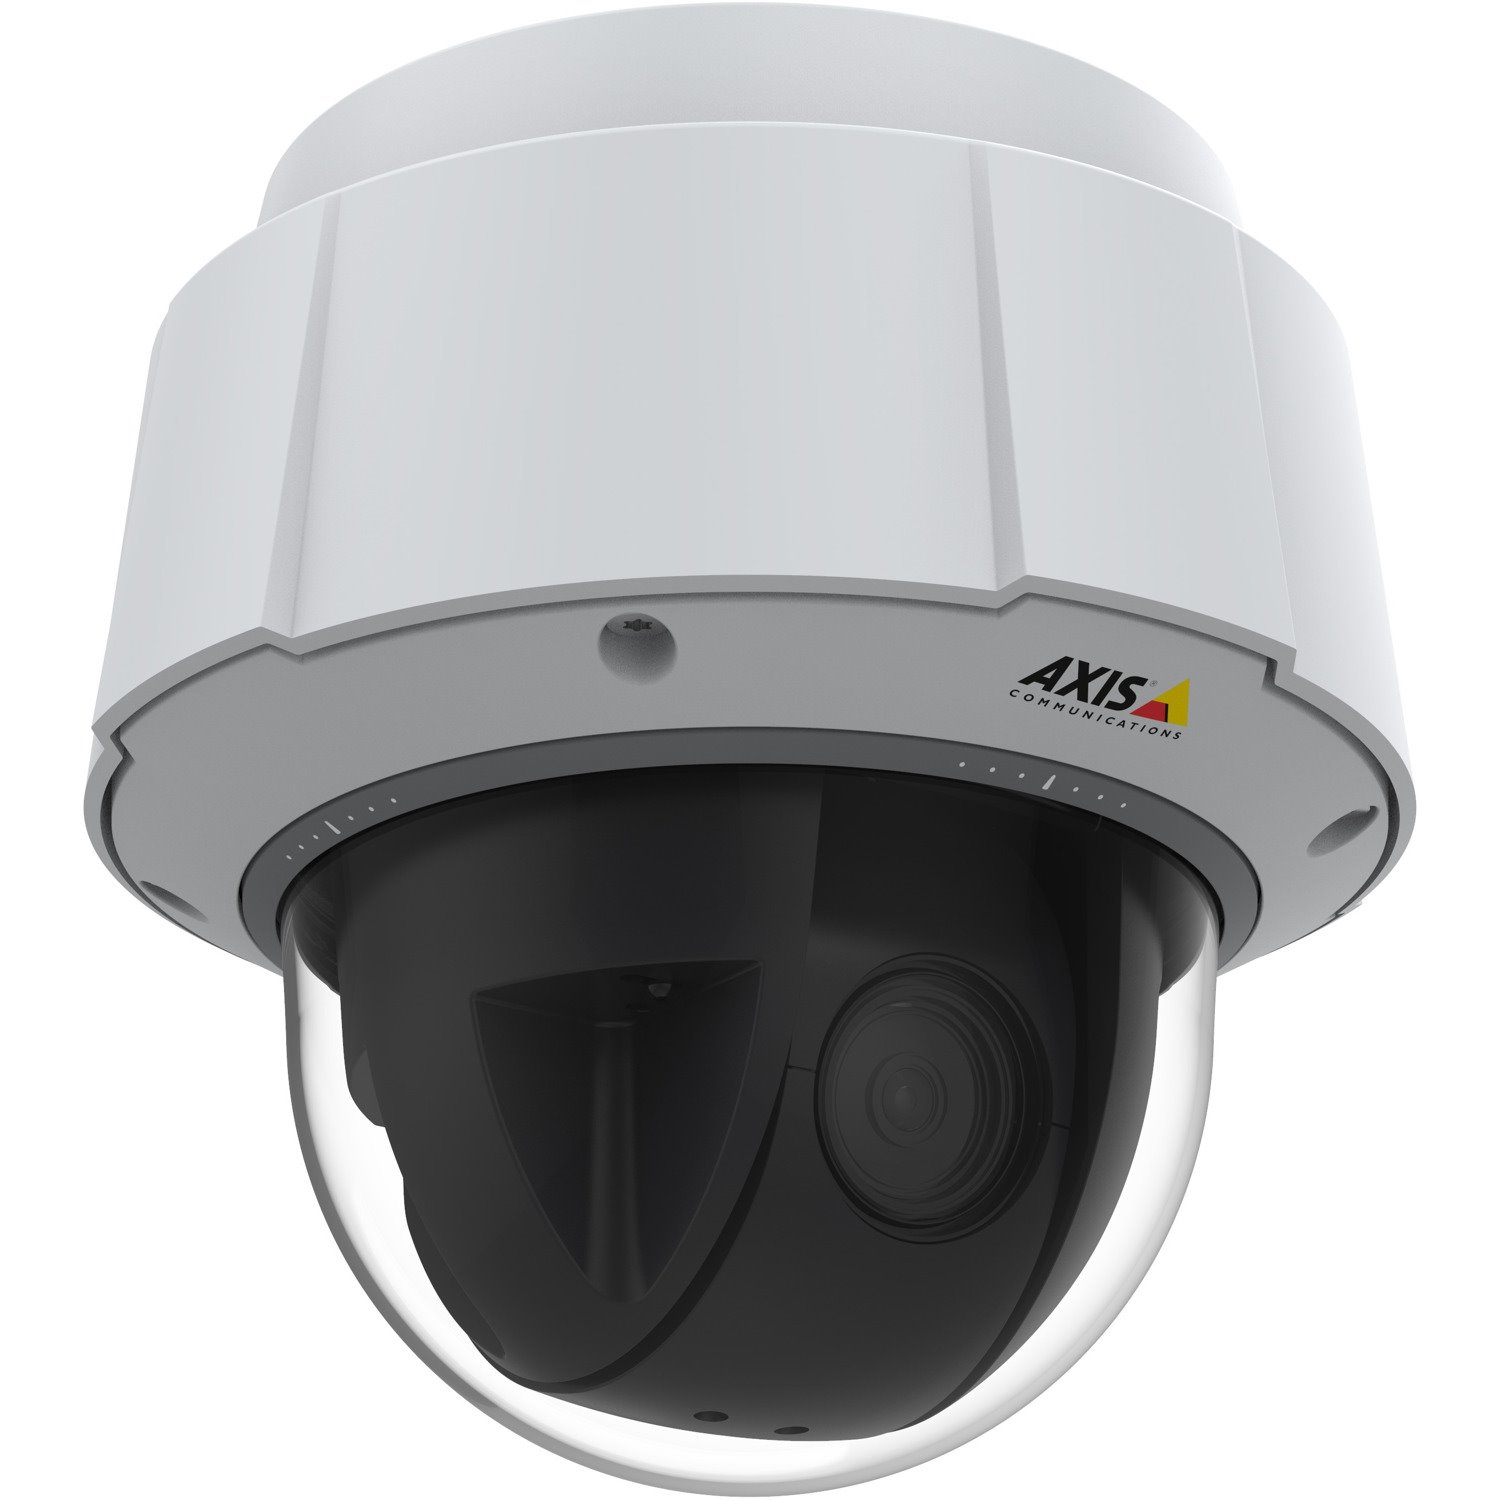 AXIS Q6075-E HD Network Camera - Dome